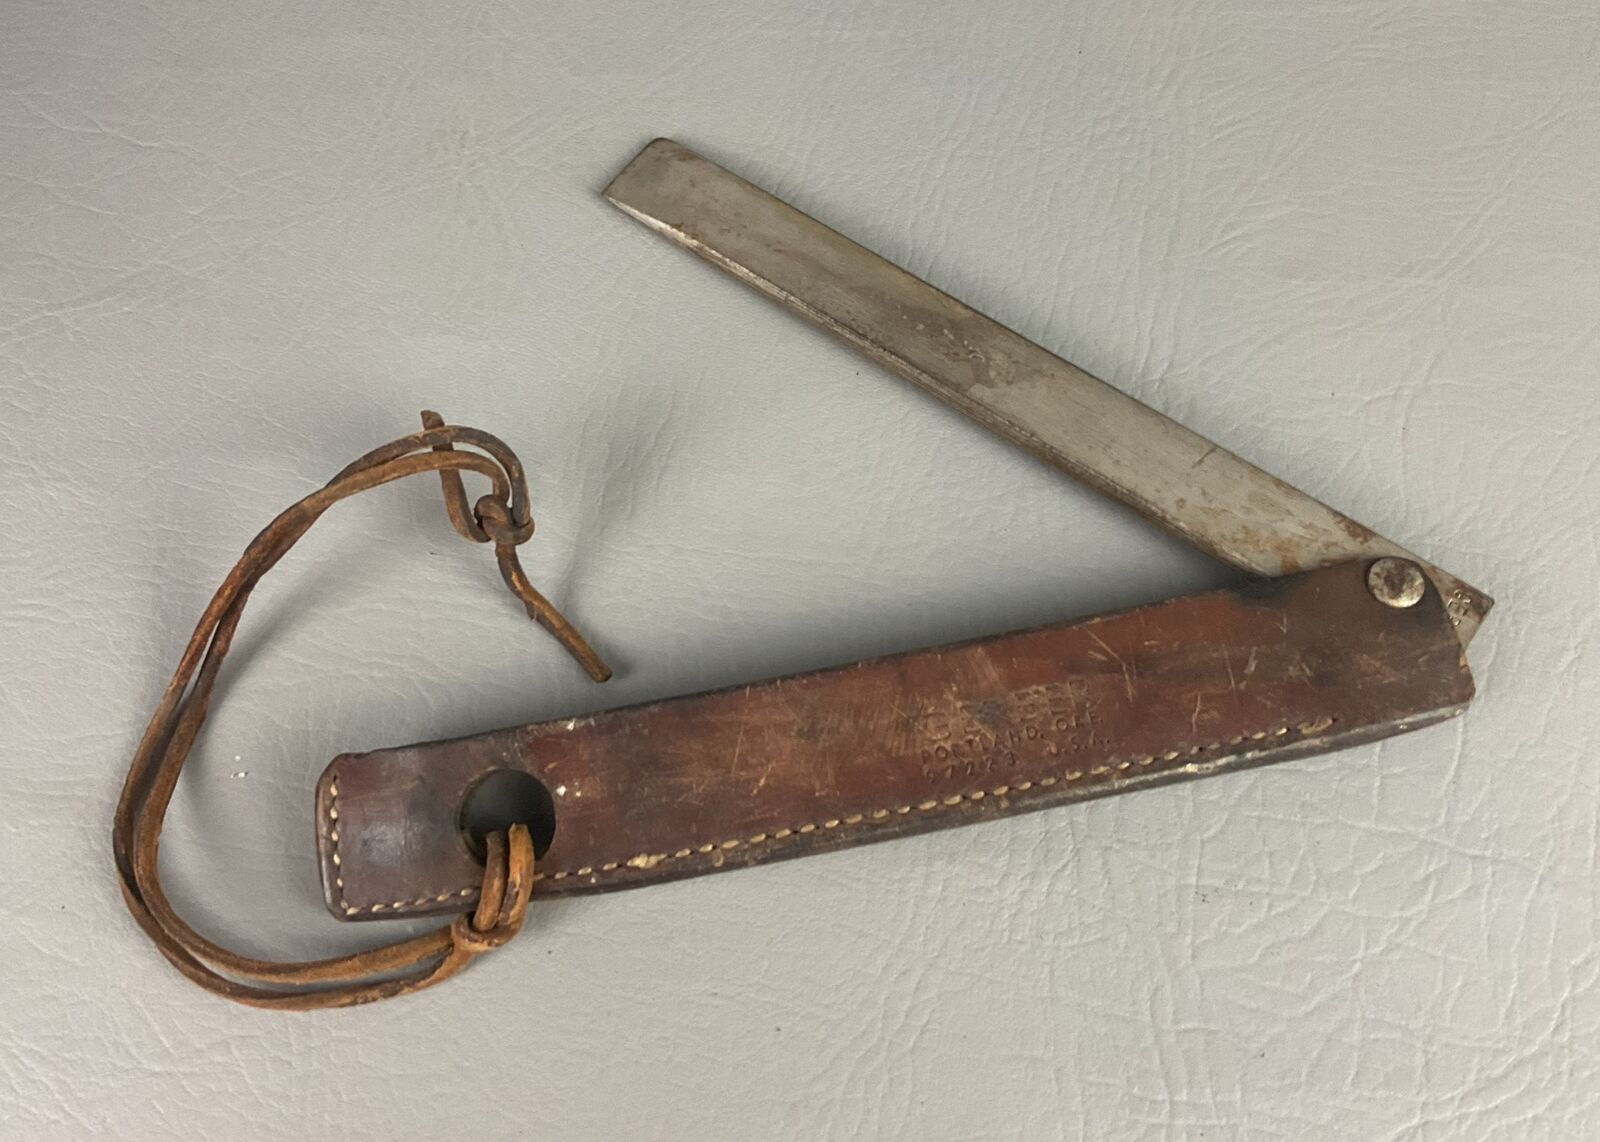 Antique Gerber Knife Portland 97223 Rare Find